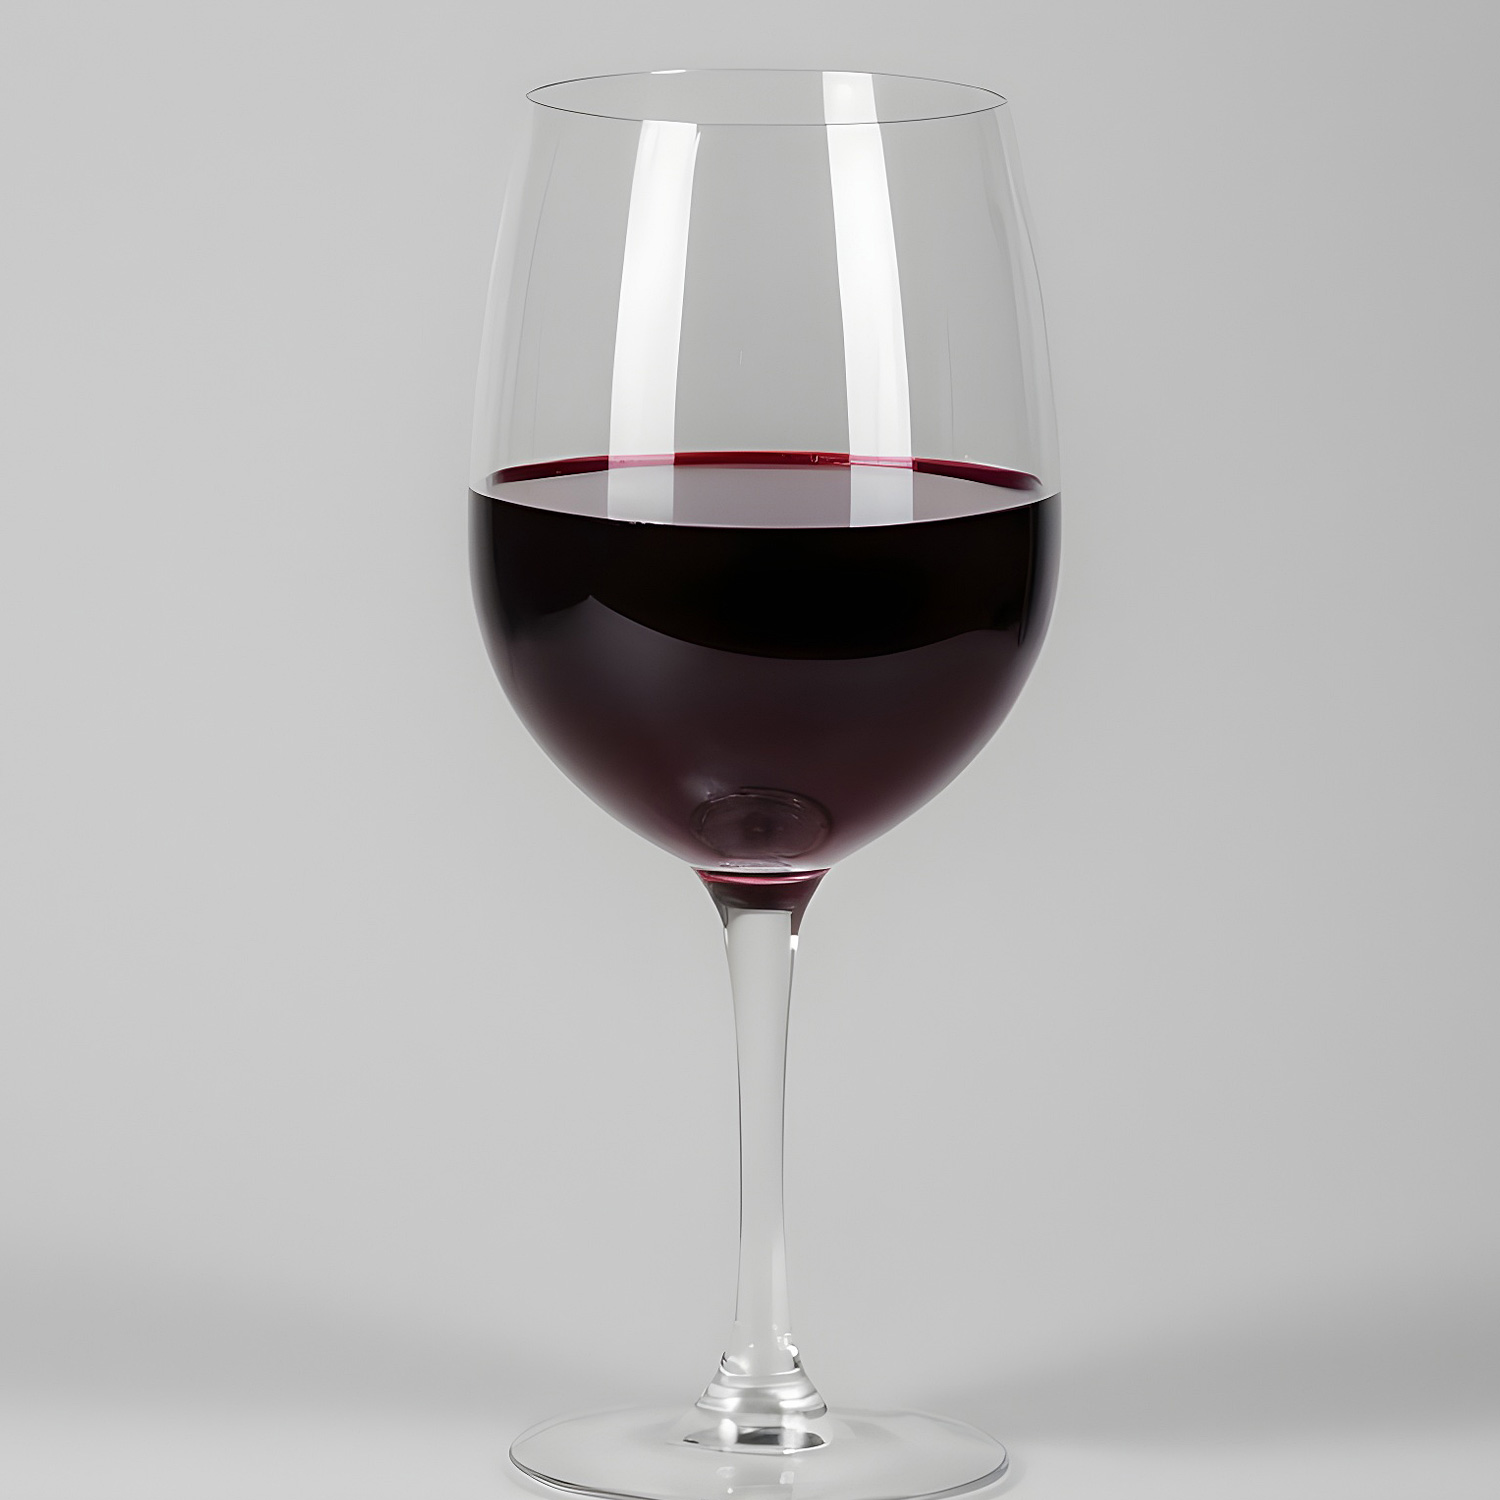 Ausgezeichnet köstlicher Rotwein